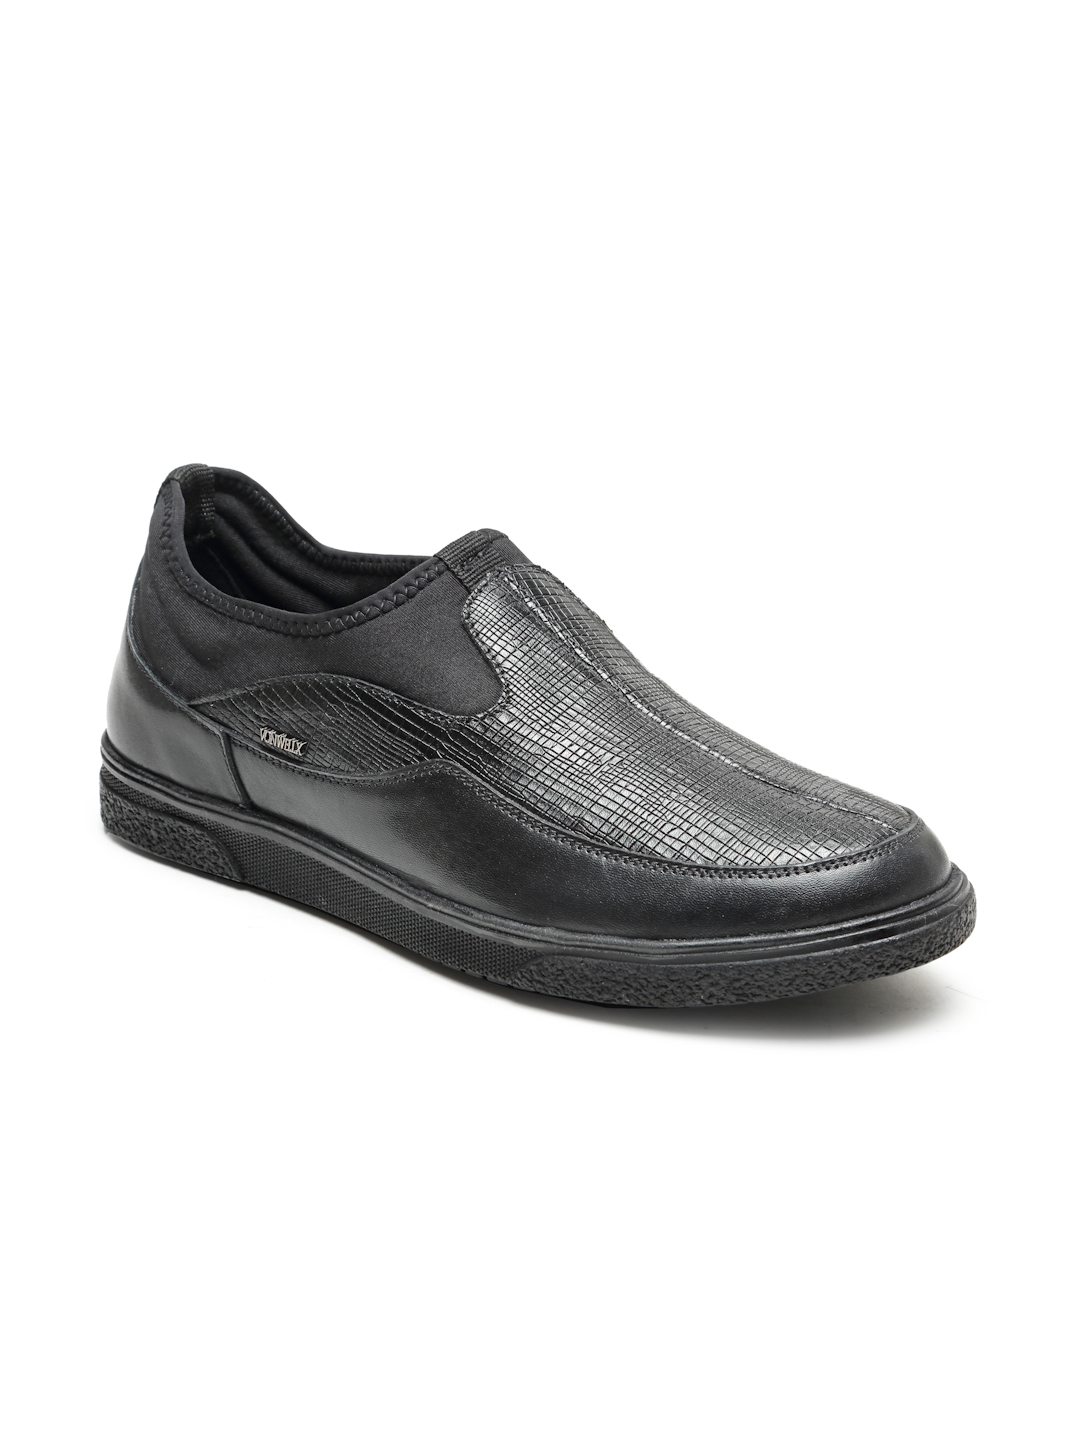 Buy Von Wellx Germany Comfort Men's Black Casual Loafers Everett Online in Salalah